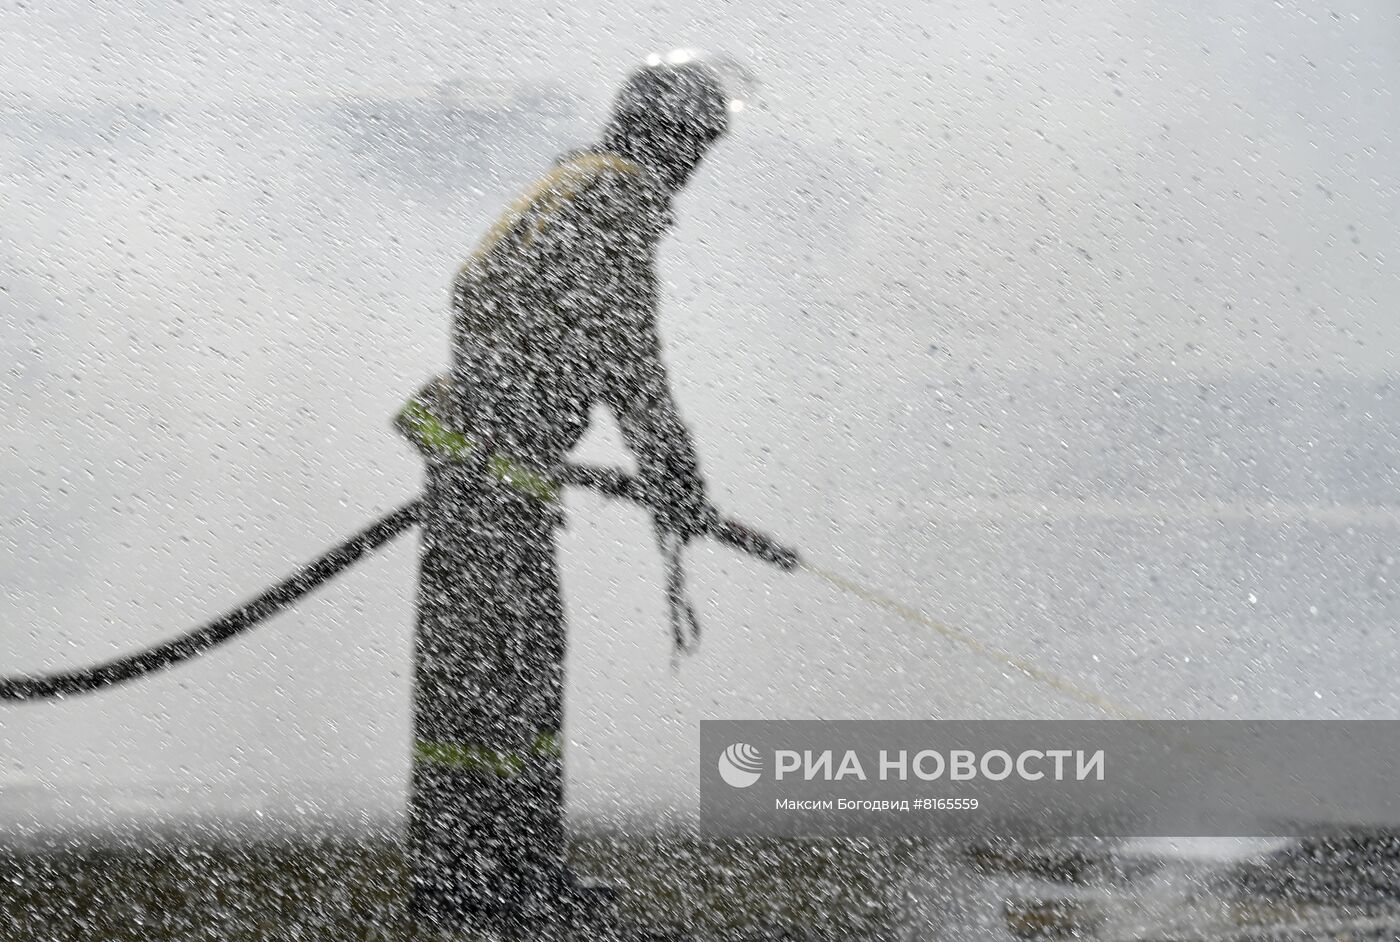 Учения МЧС по ликвидации природных пожаров в Татарстане